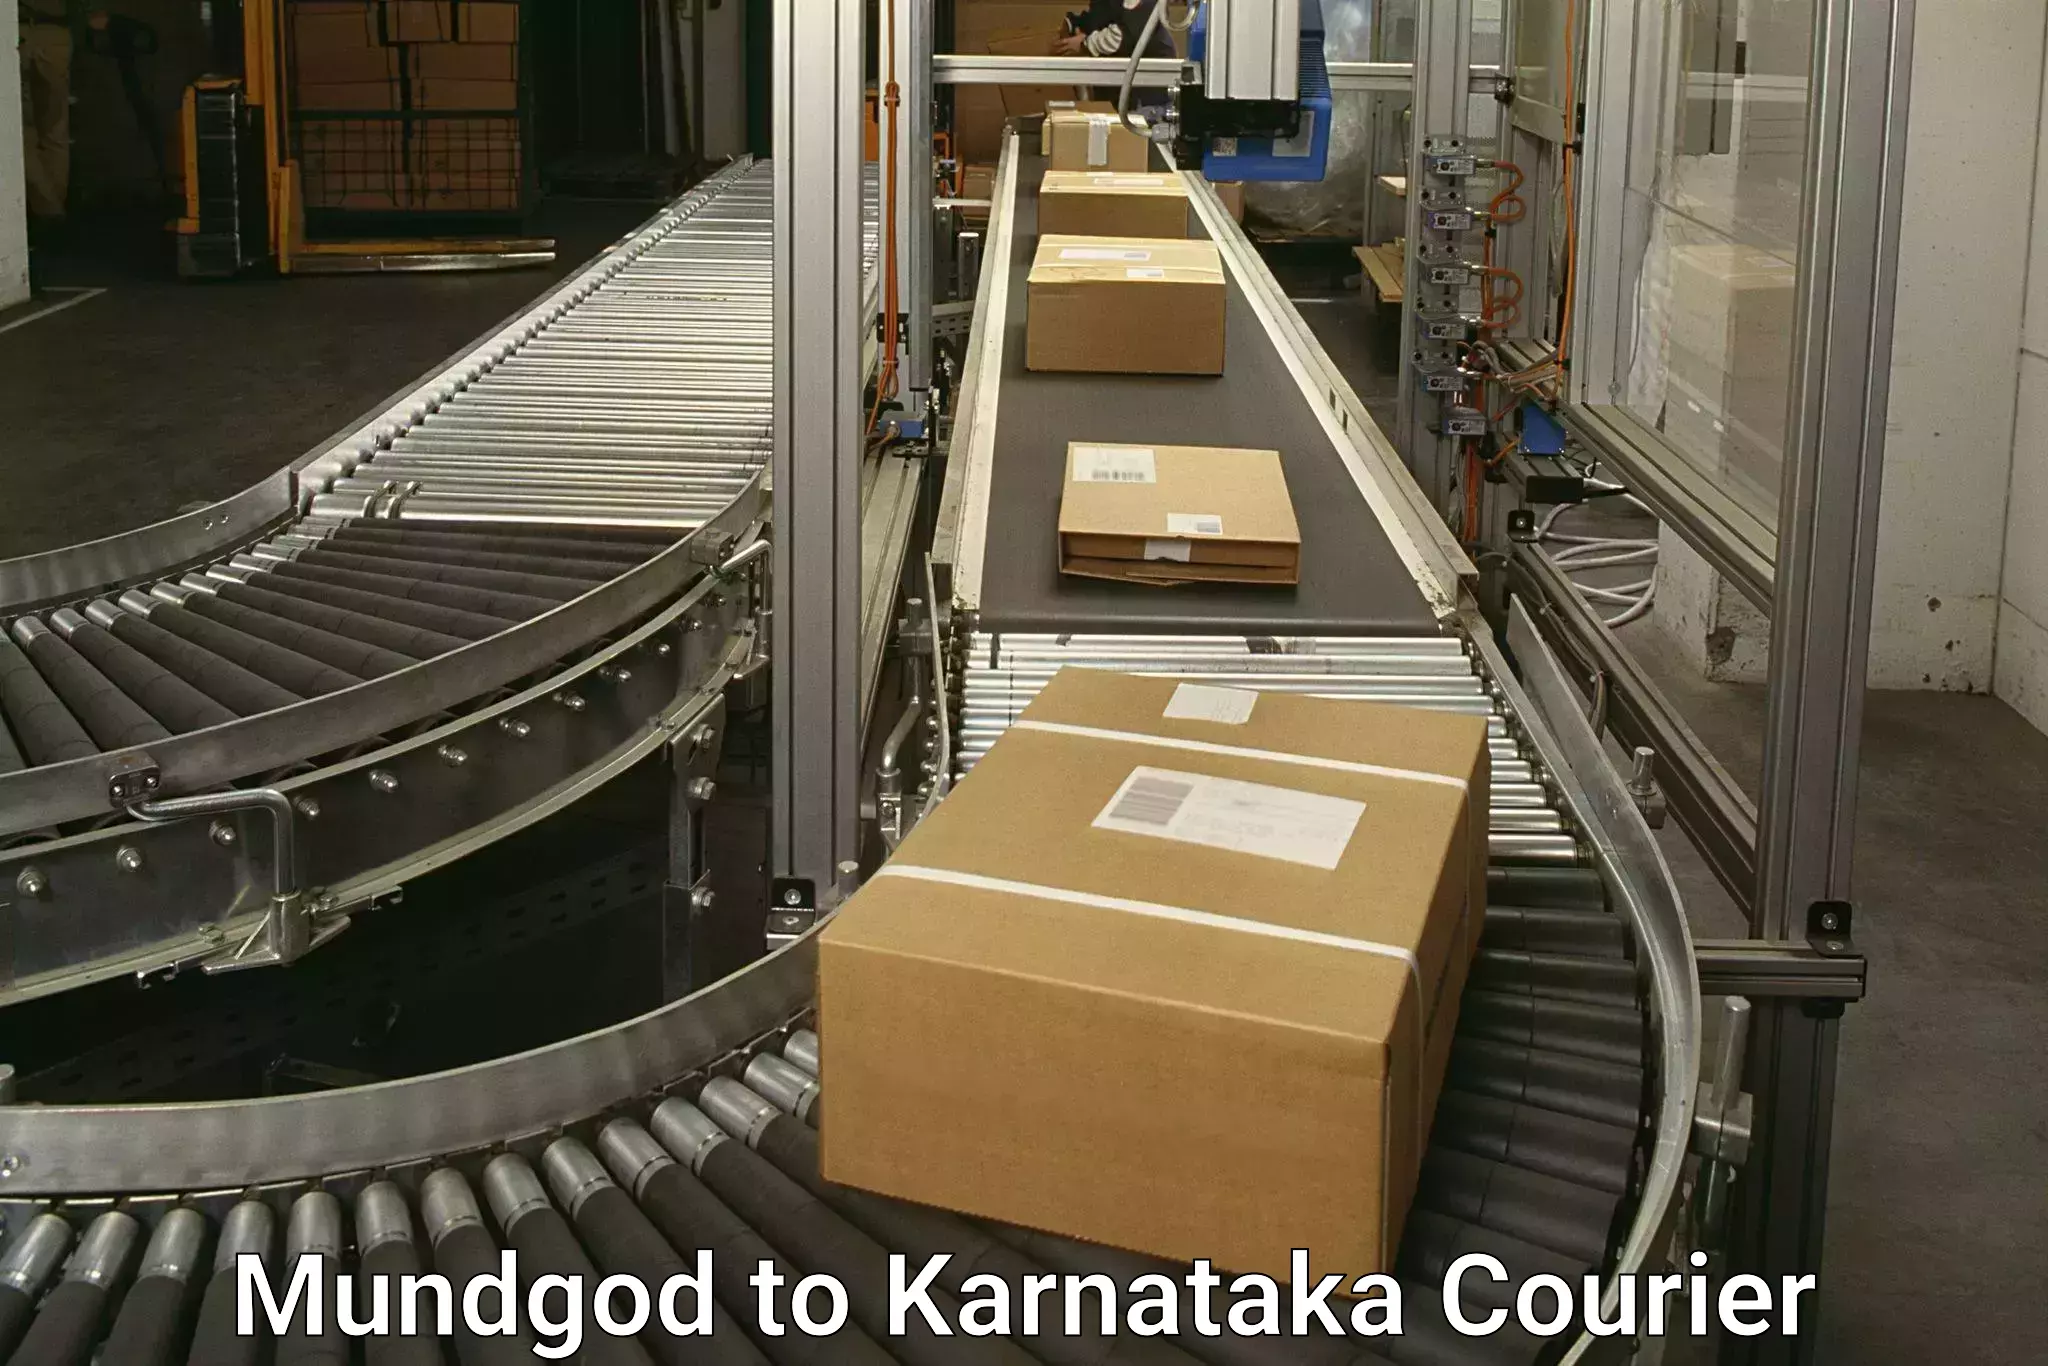 Large package courier Mundgod to Karnataka